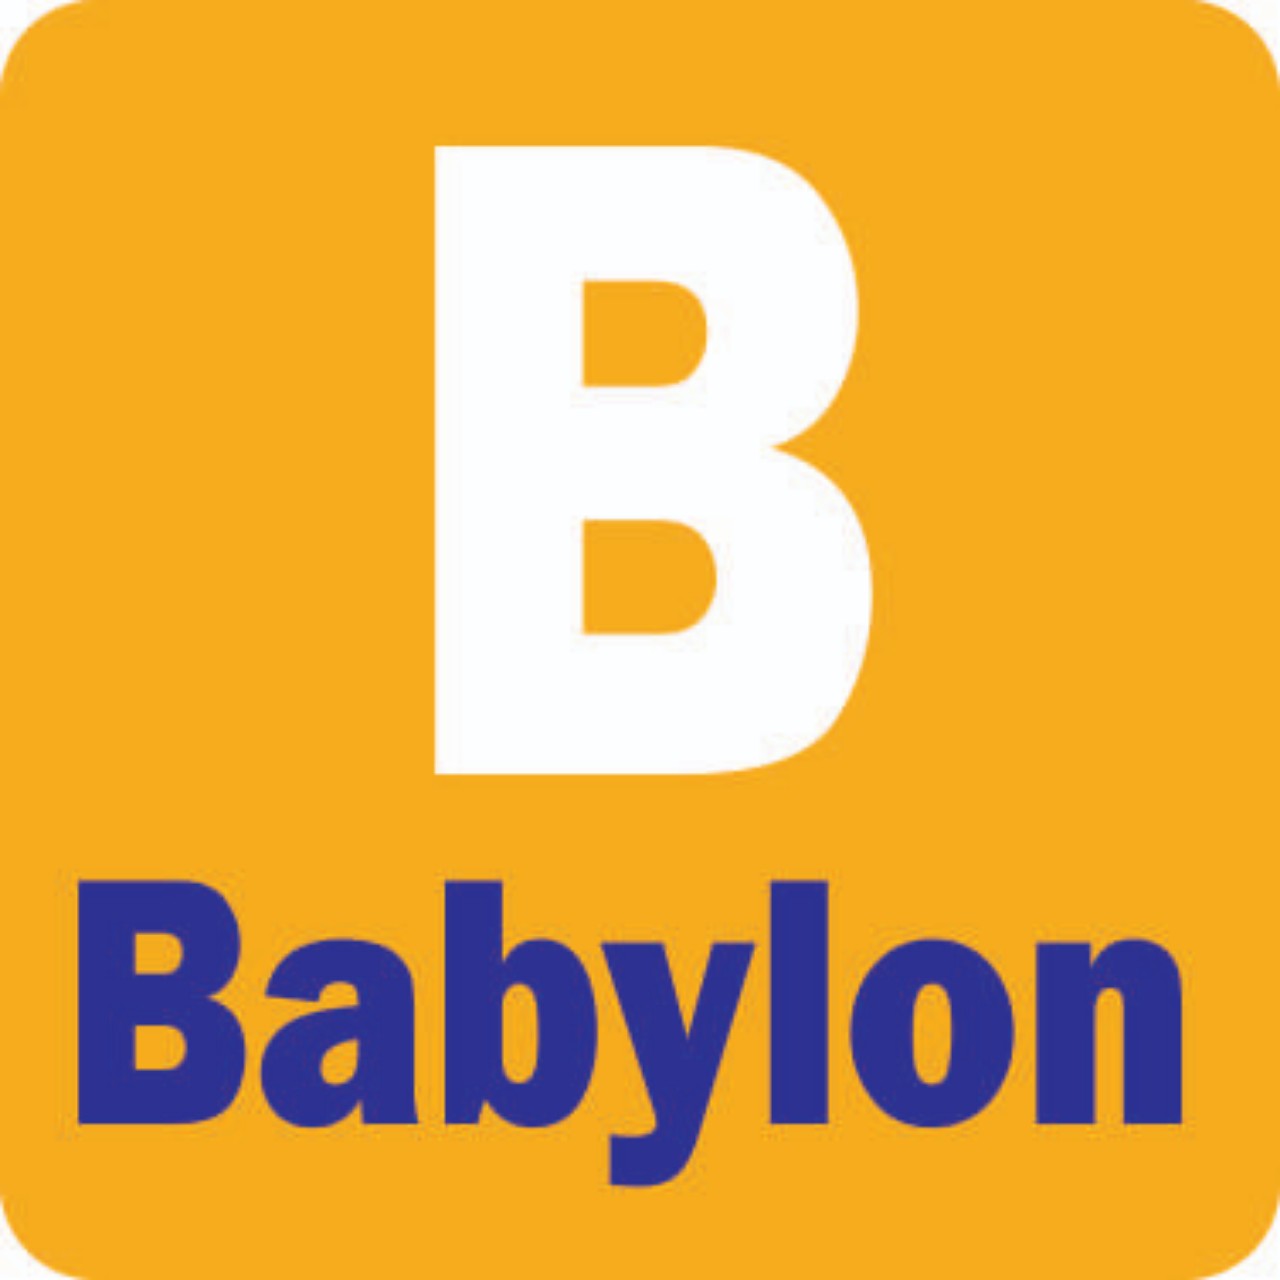 BABYLON STORE